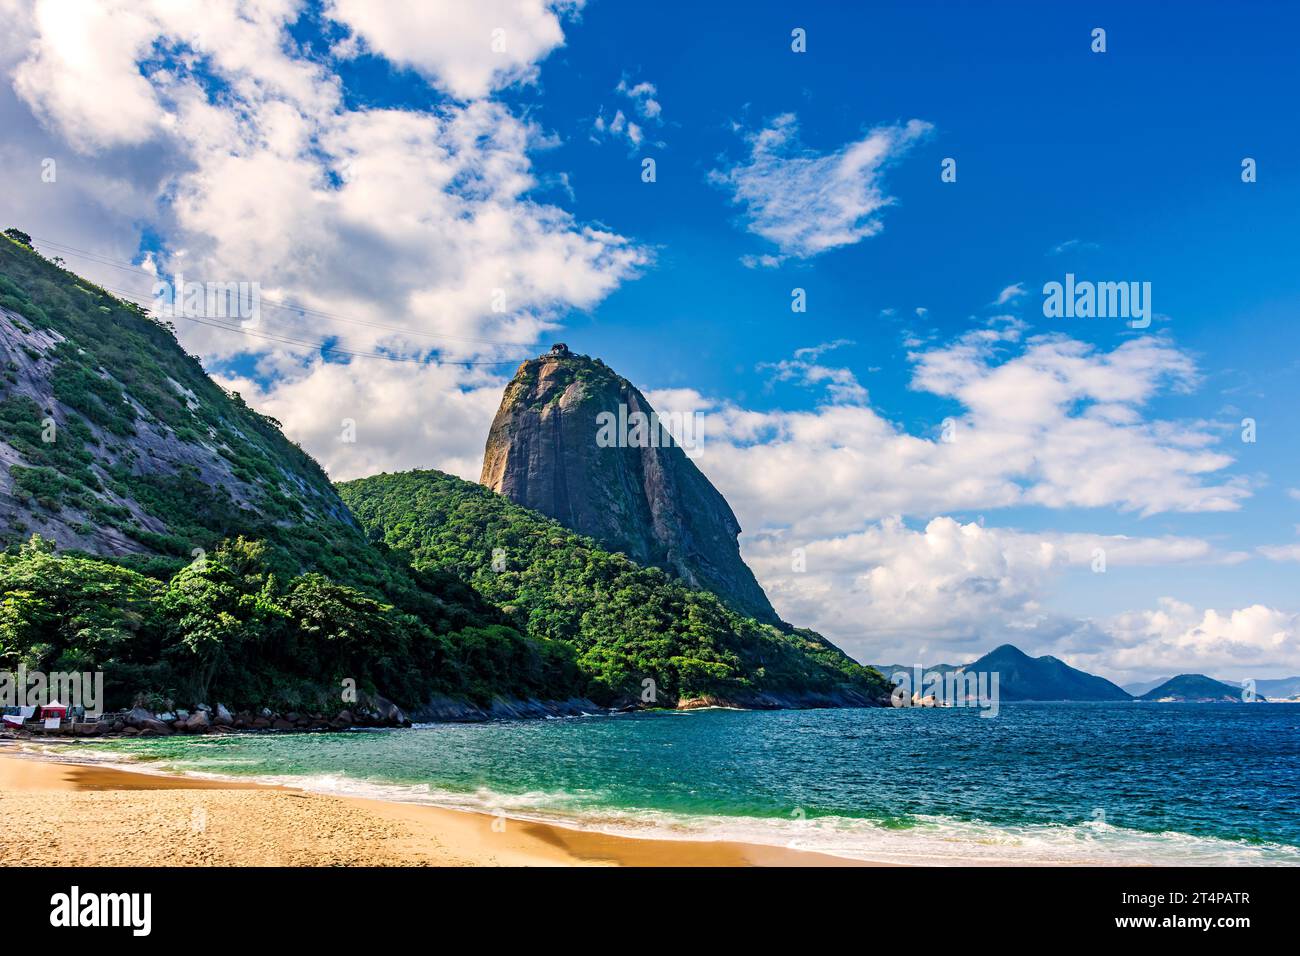 Sugarloaf Mountain, l'une des attractions touristiques principales et les plus connues de Rio de Janeiro Banque D'Images